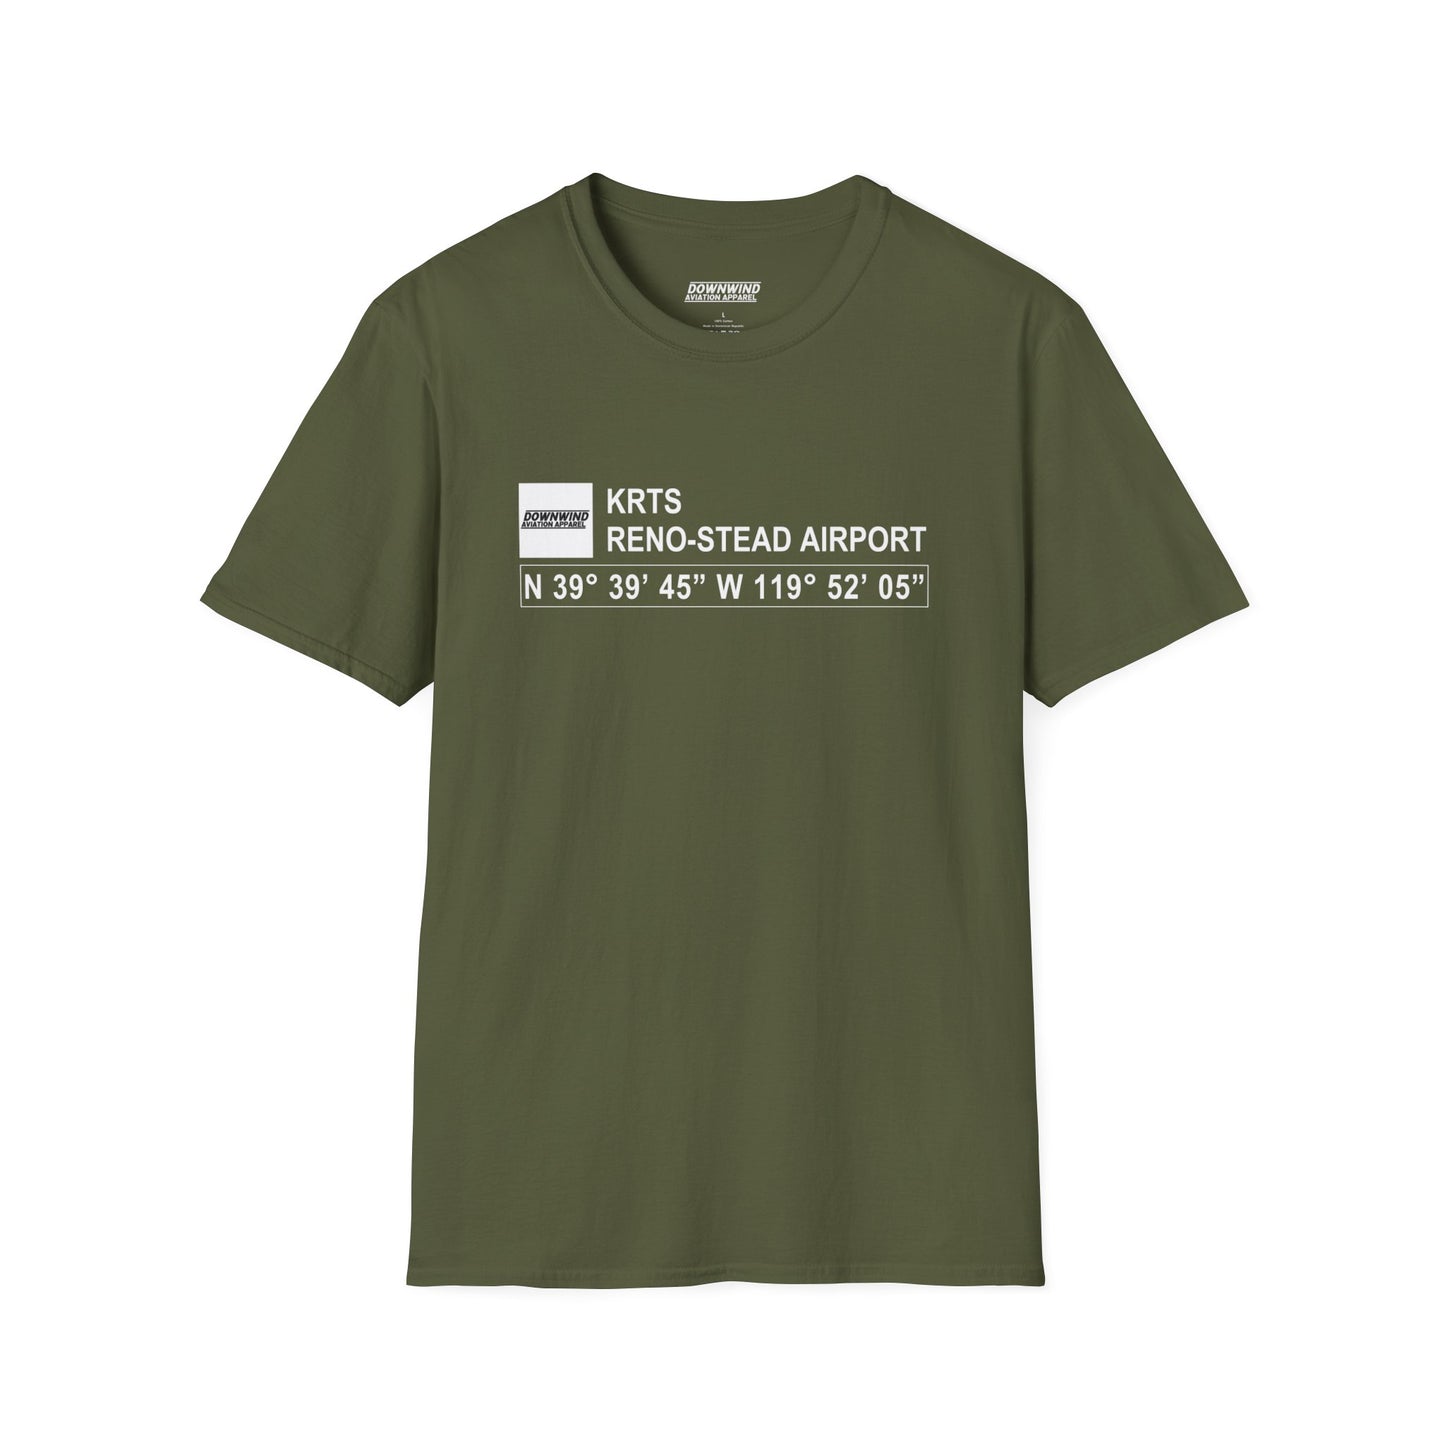 KRTS / Reno-Stead Airport T-Shirt